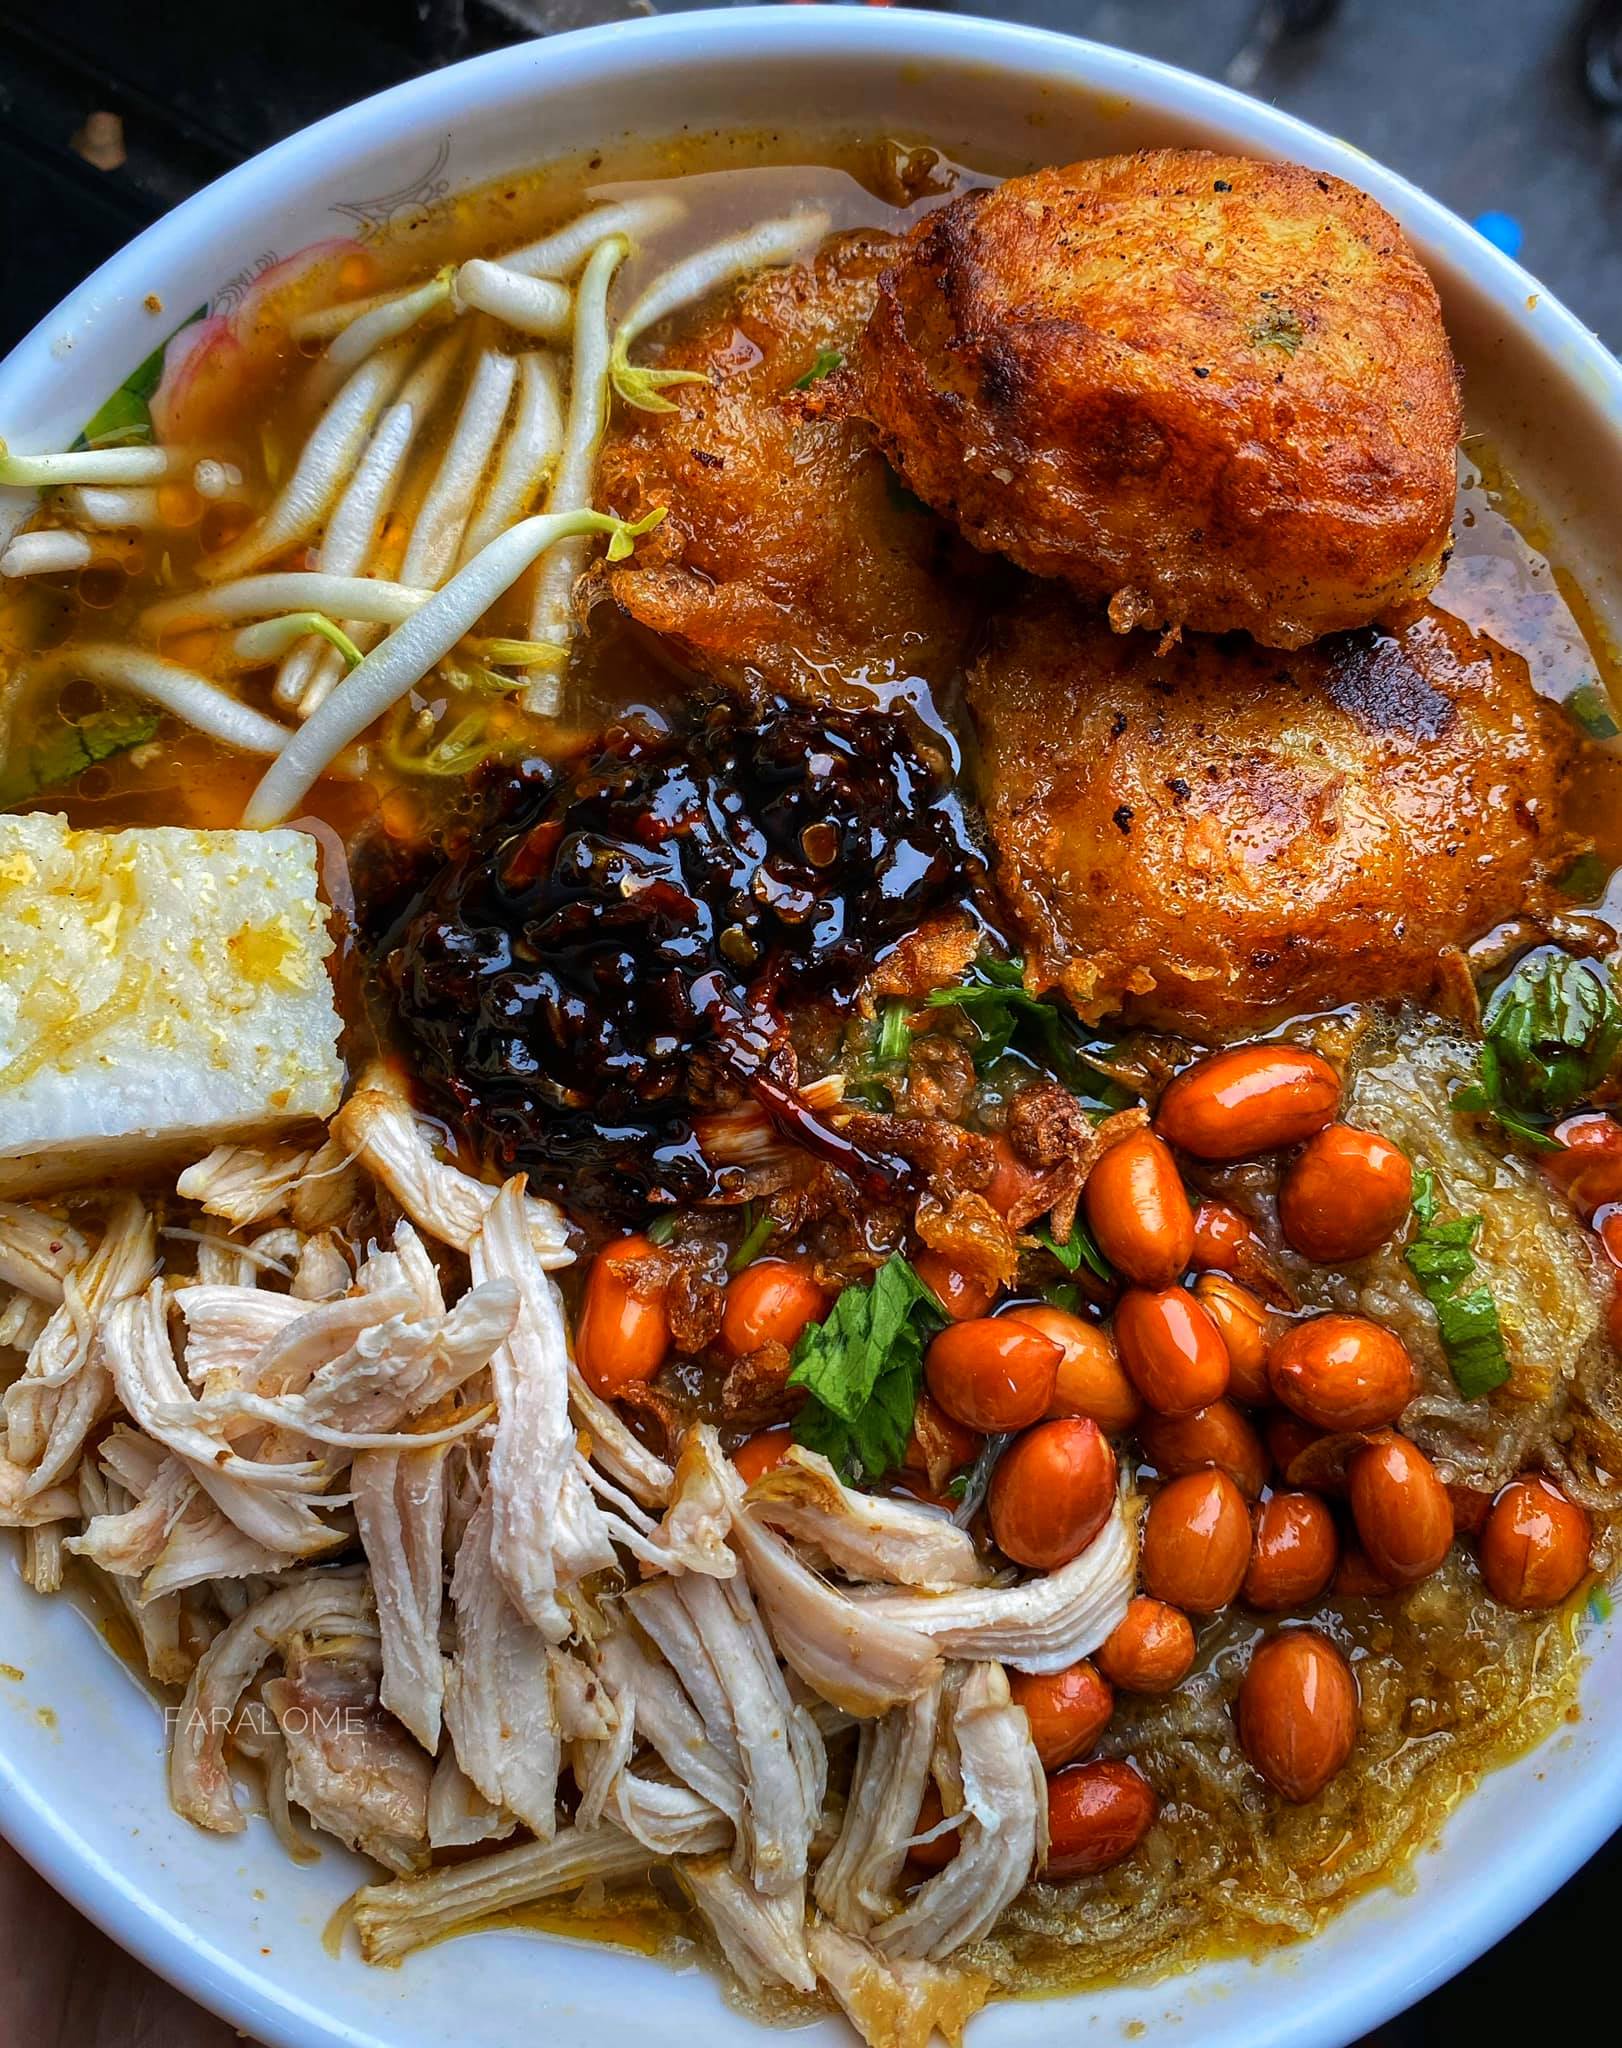 12 Resepi Masakan Indonesia Yang Dijamin Enak (Wajib Cuba)  Saji.my